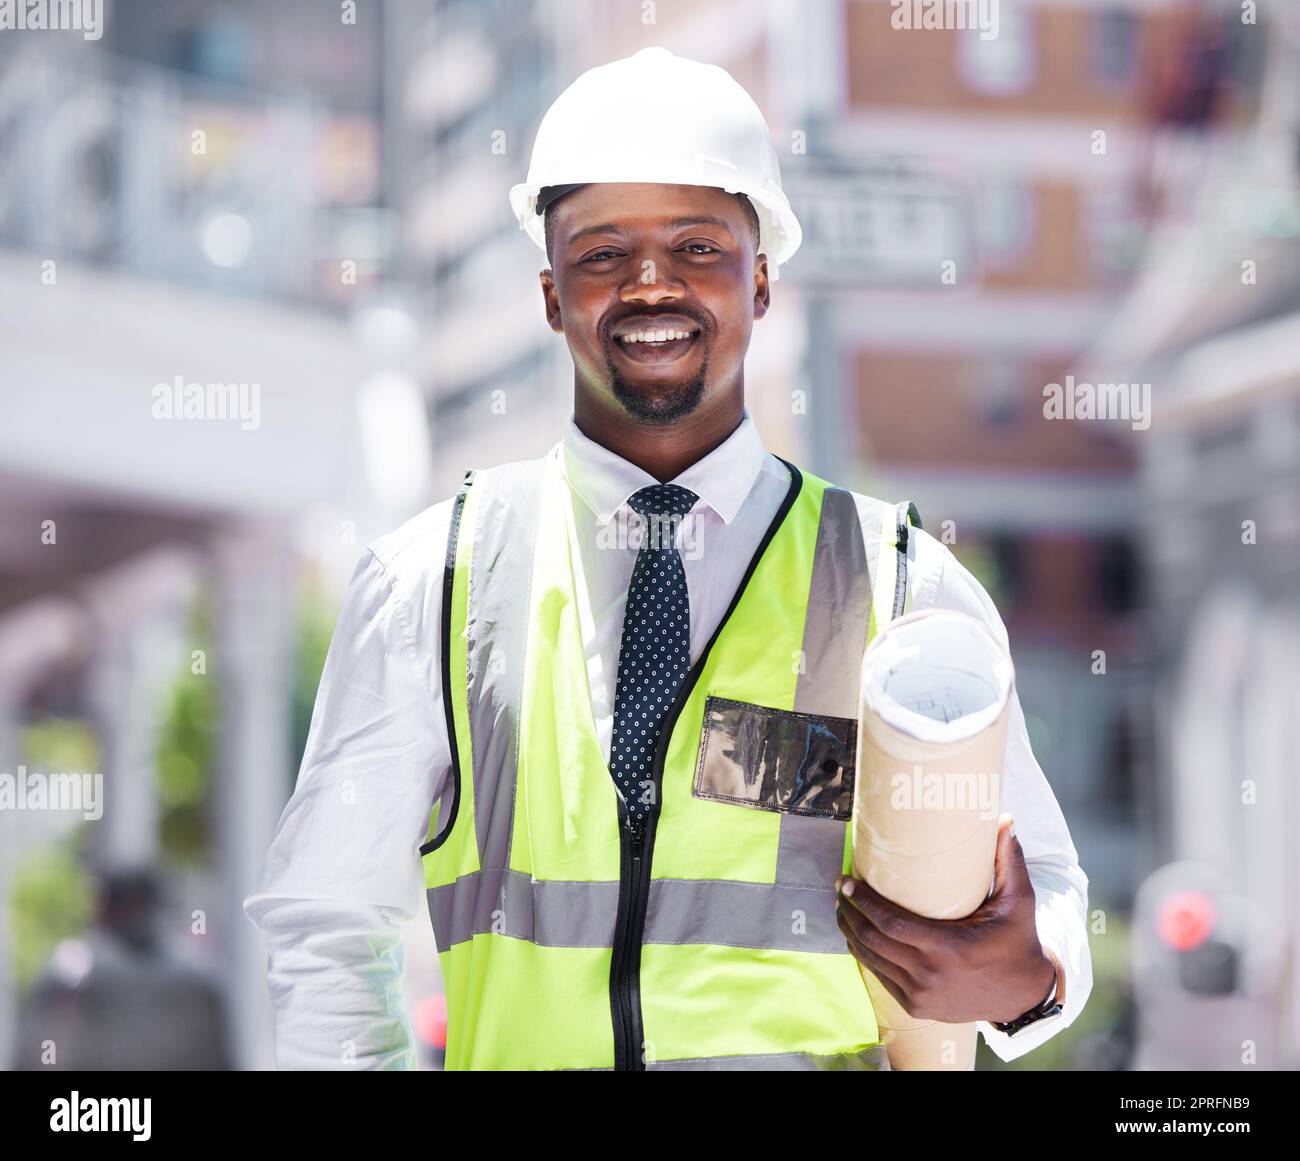 Geschäftsleute, Bauunternehmer und Bauunternehmer, die Baupläne mit einer Vision für den Erfolg im Bauwesen haben. Porträt eines glücklichen, lächelnden schwarzen Mannes mit einem Plan und einer Idee für Architekturdesign in der Stadt. Stockfoto